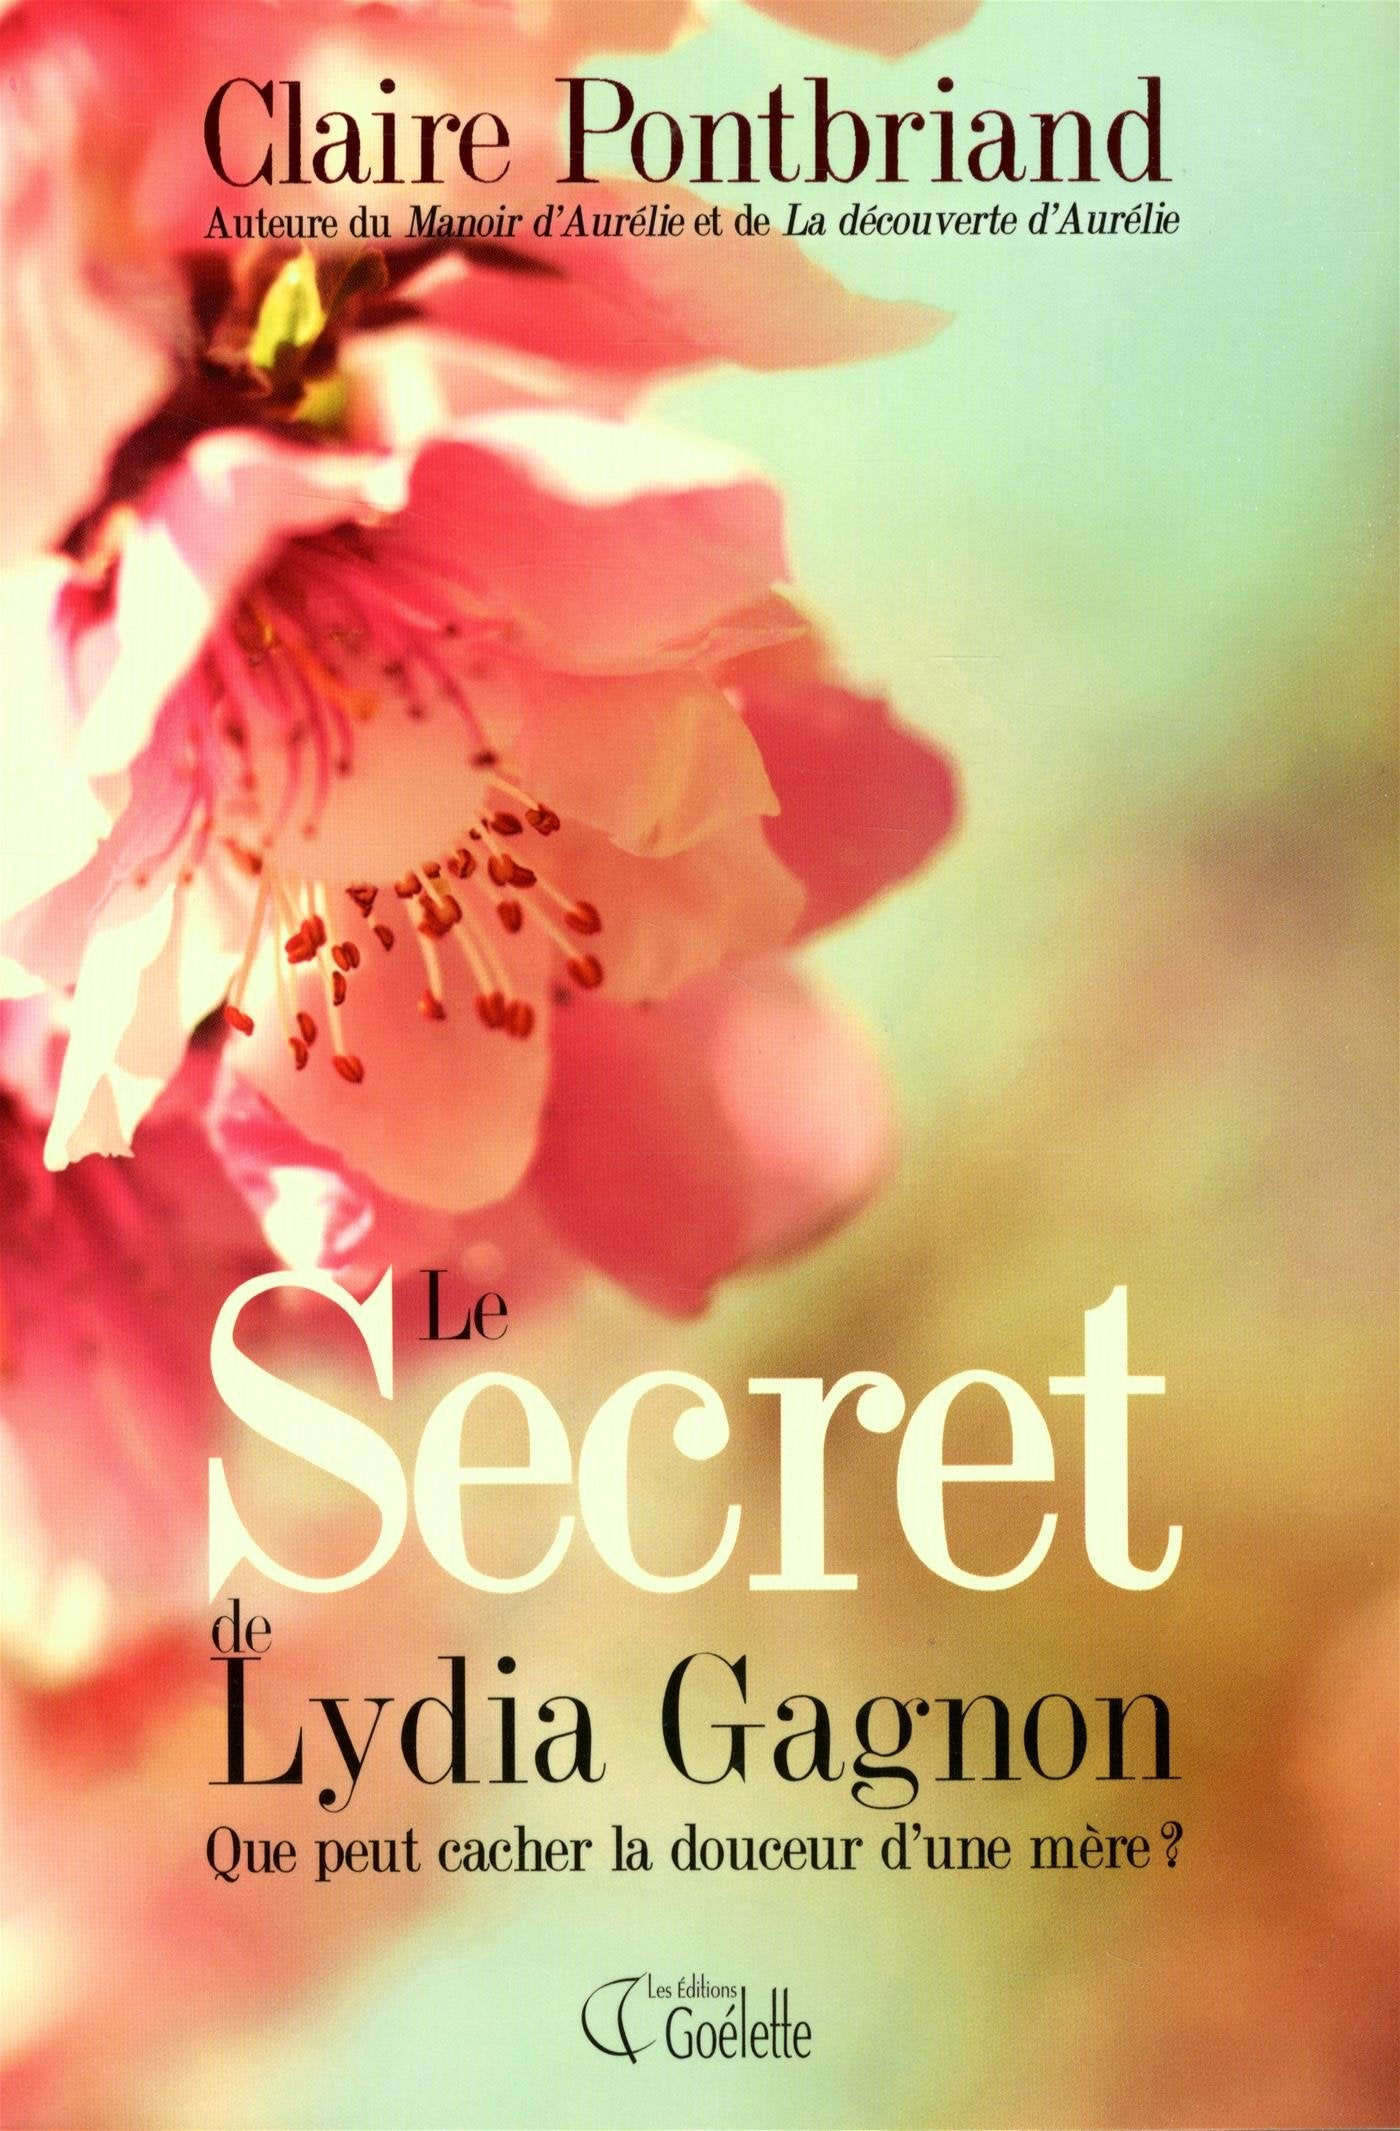 Le secret de Lydia Gagnon : Que peut cacher la douceur d'une mère? - Claire Pontbriand